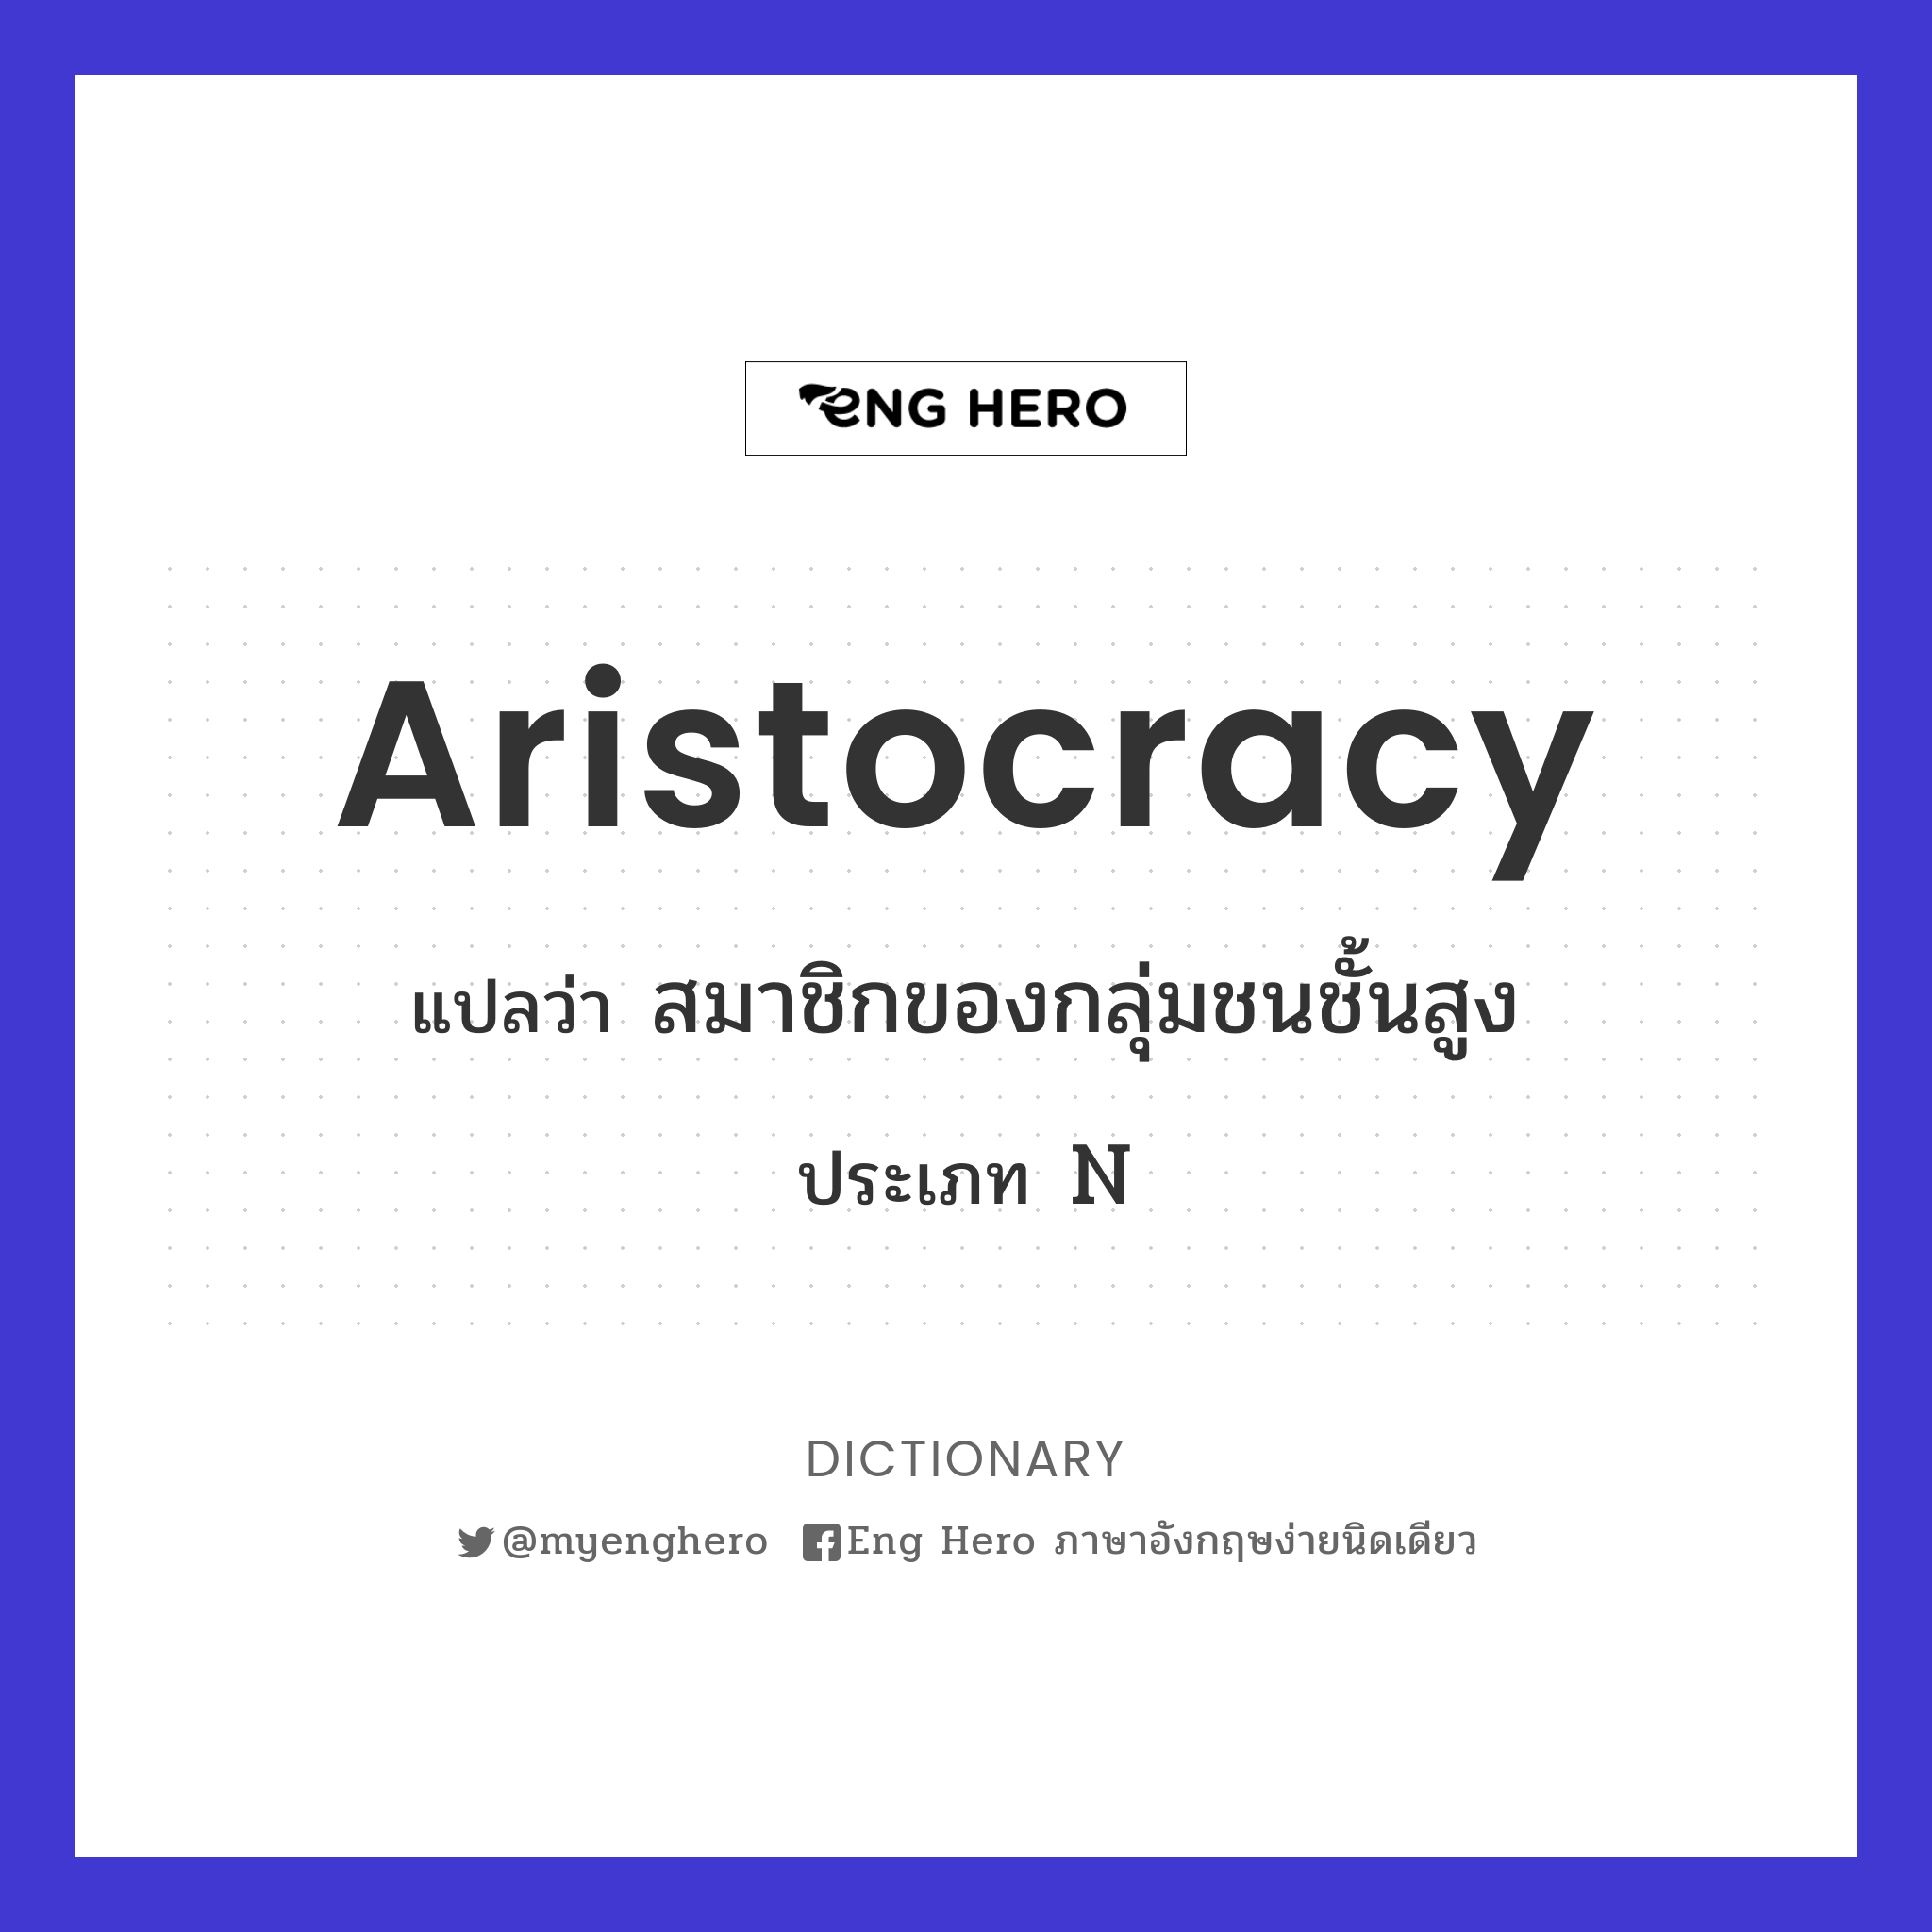 aristocracy